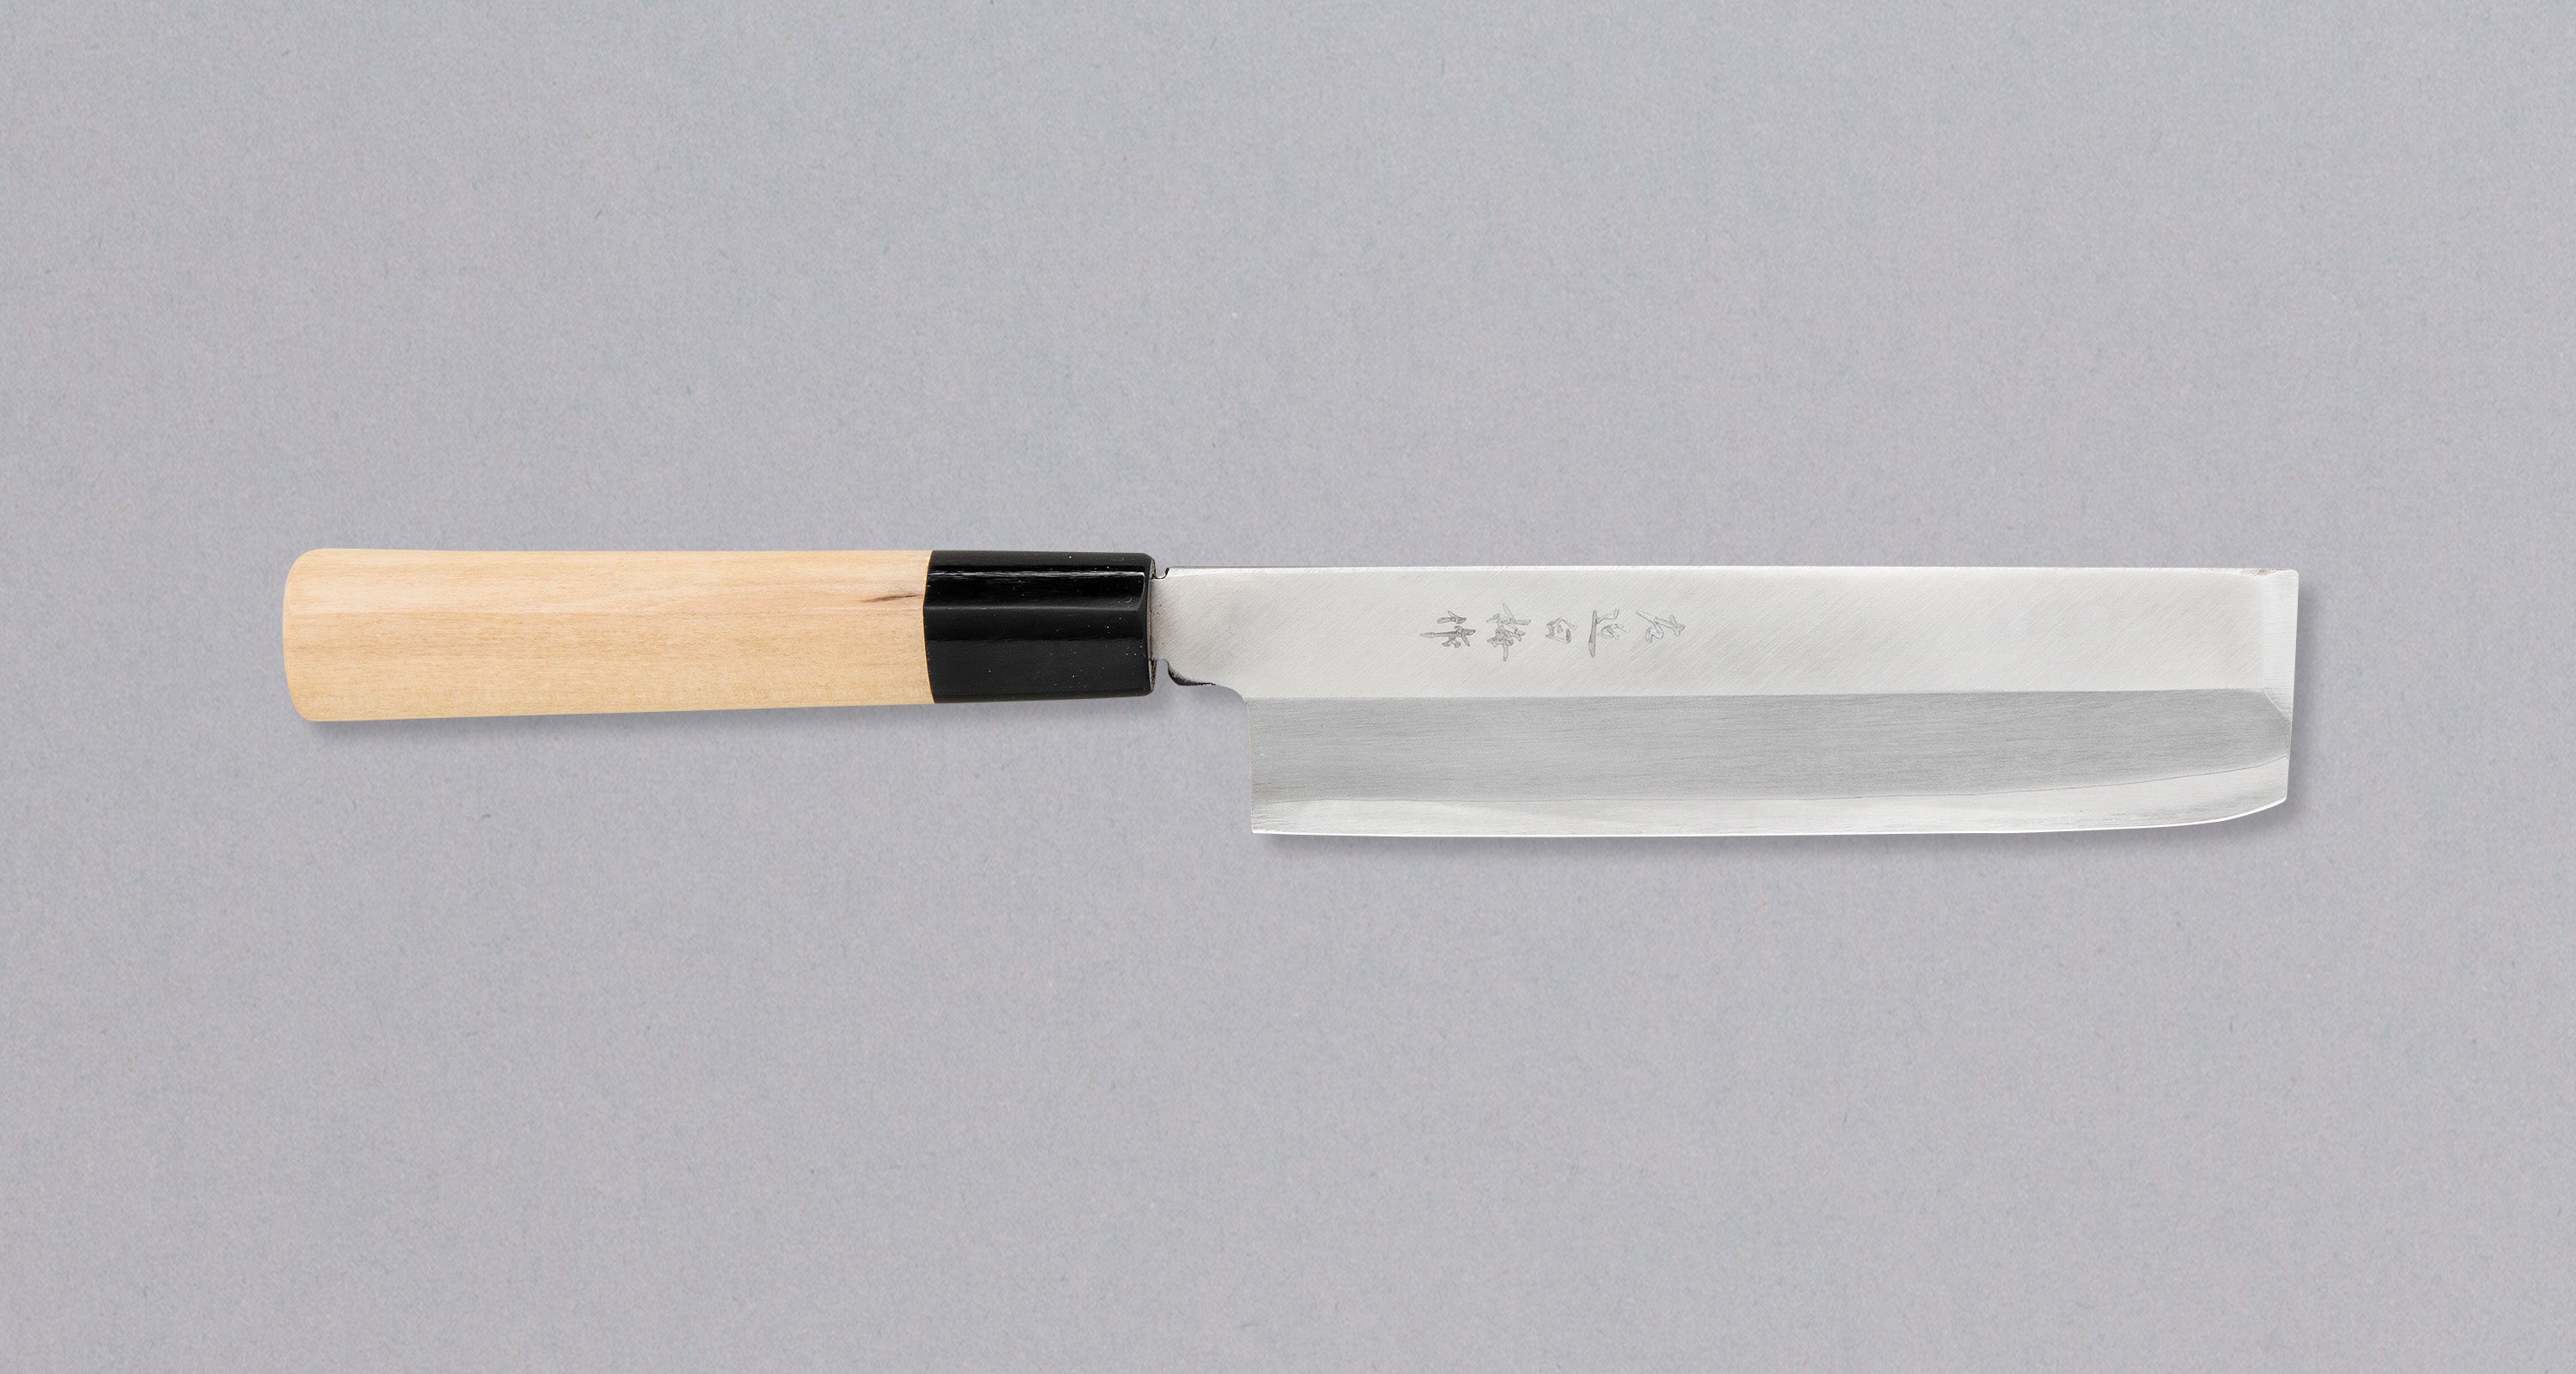 Hokiyama Kakugata-Usuba 165 mm (6,5) – SharpEdge